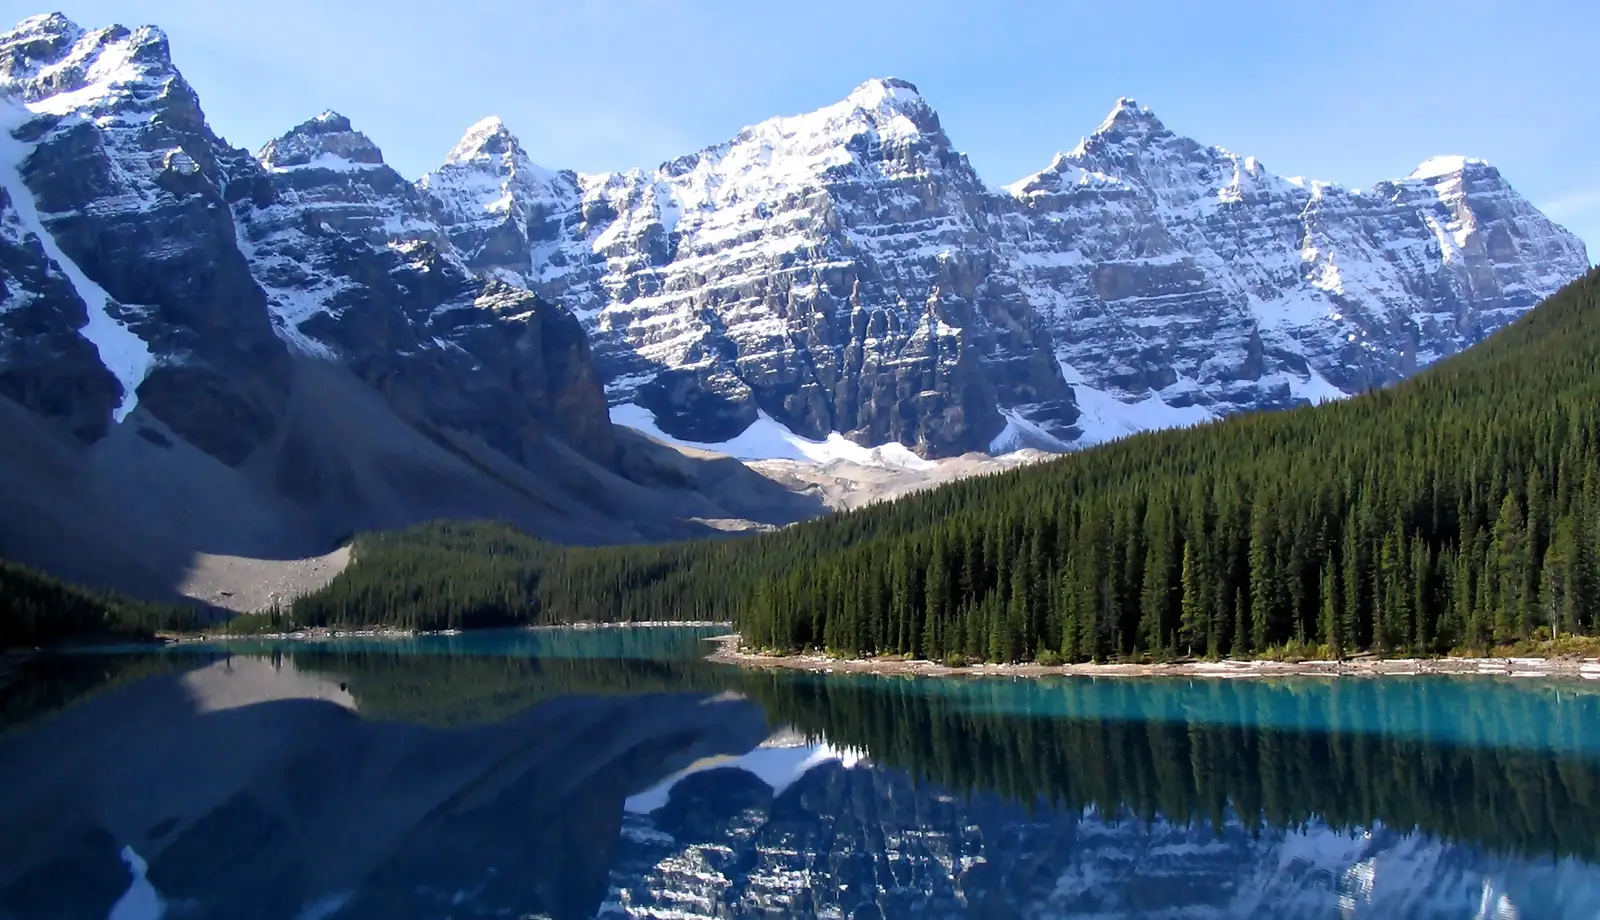 Dãy núi Rocky - Ngọn núi diệu kỳ của xứ sở lá phong Canada